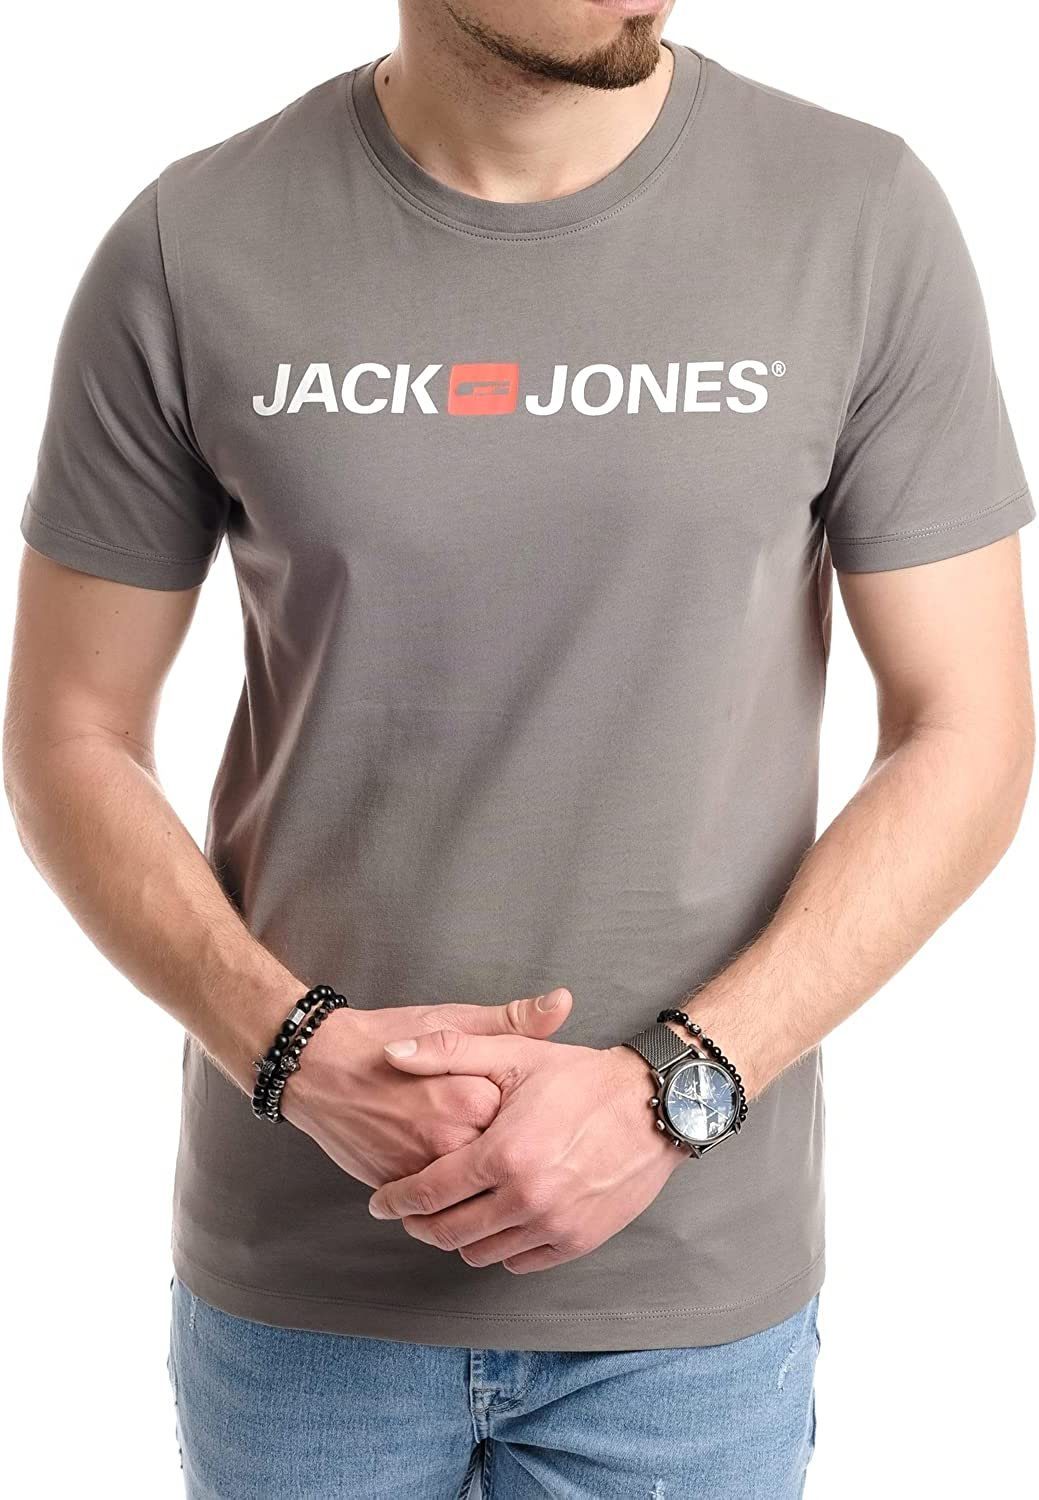 mit Print-Shirt Jack Sage Jones Baumwolle Rundhalsausschnitt, Sedona & aus